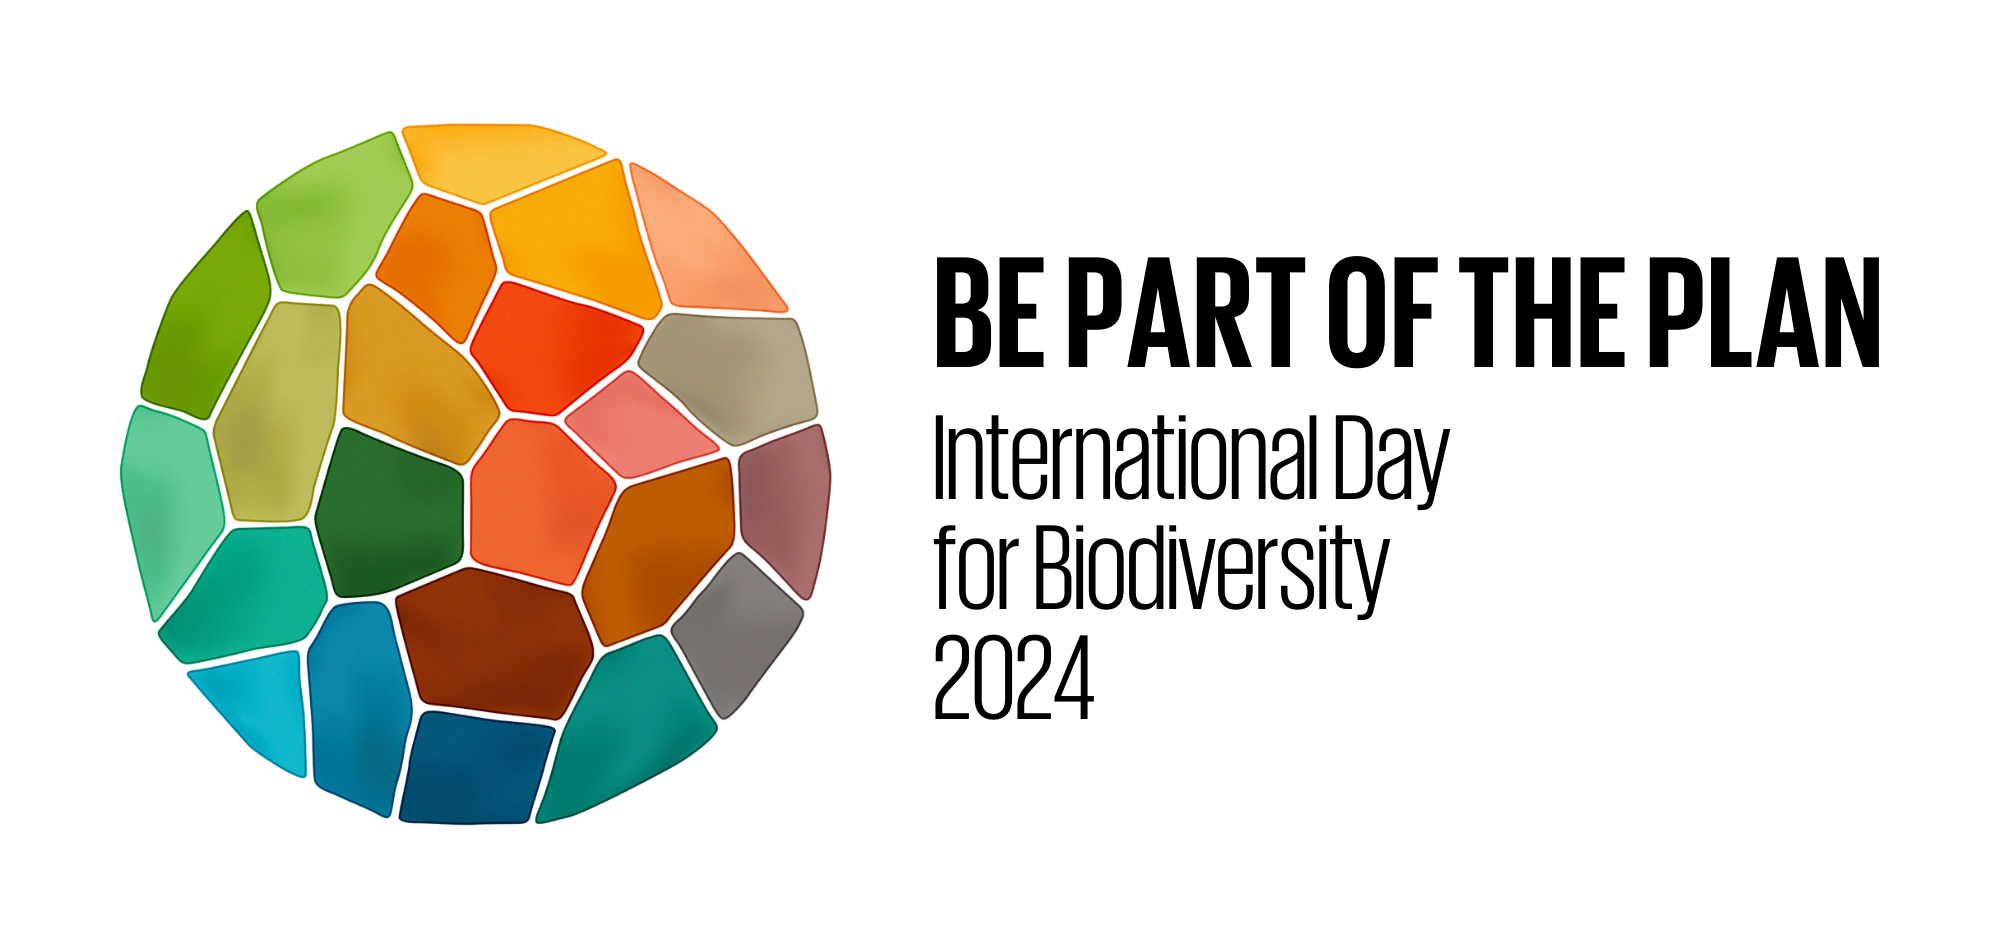 Foldscope In The Classroom: UN Biodiversity Day